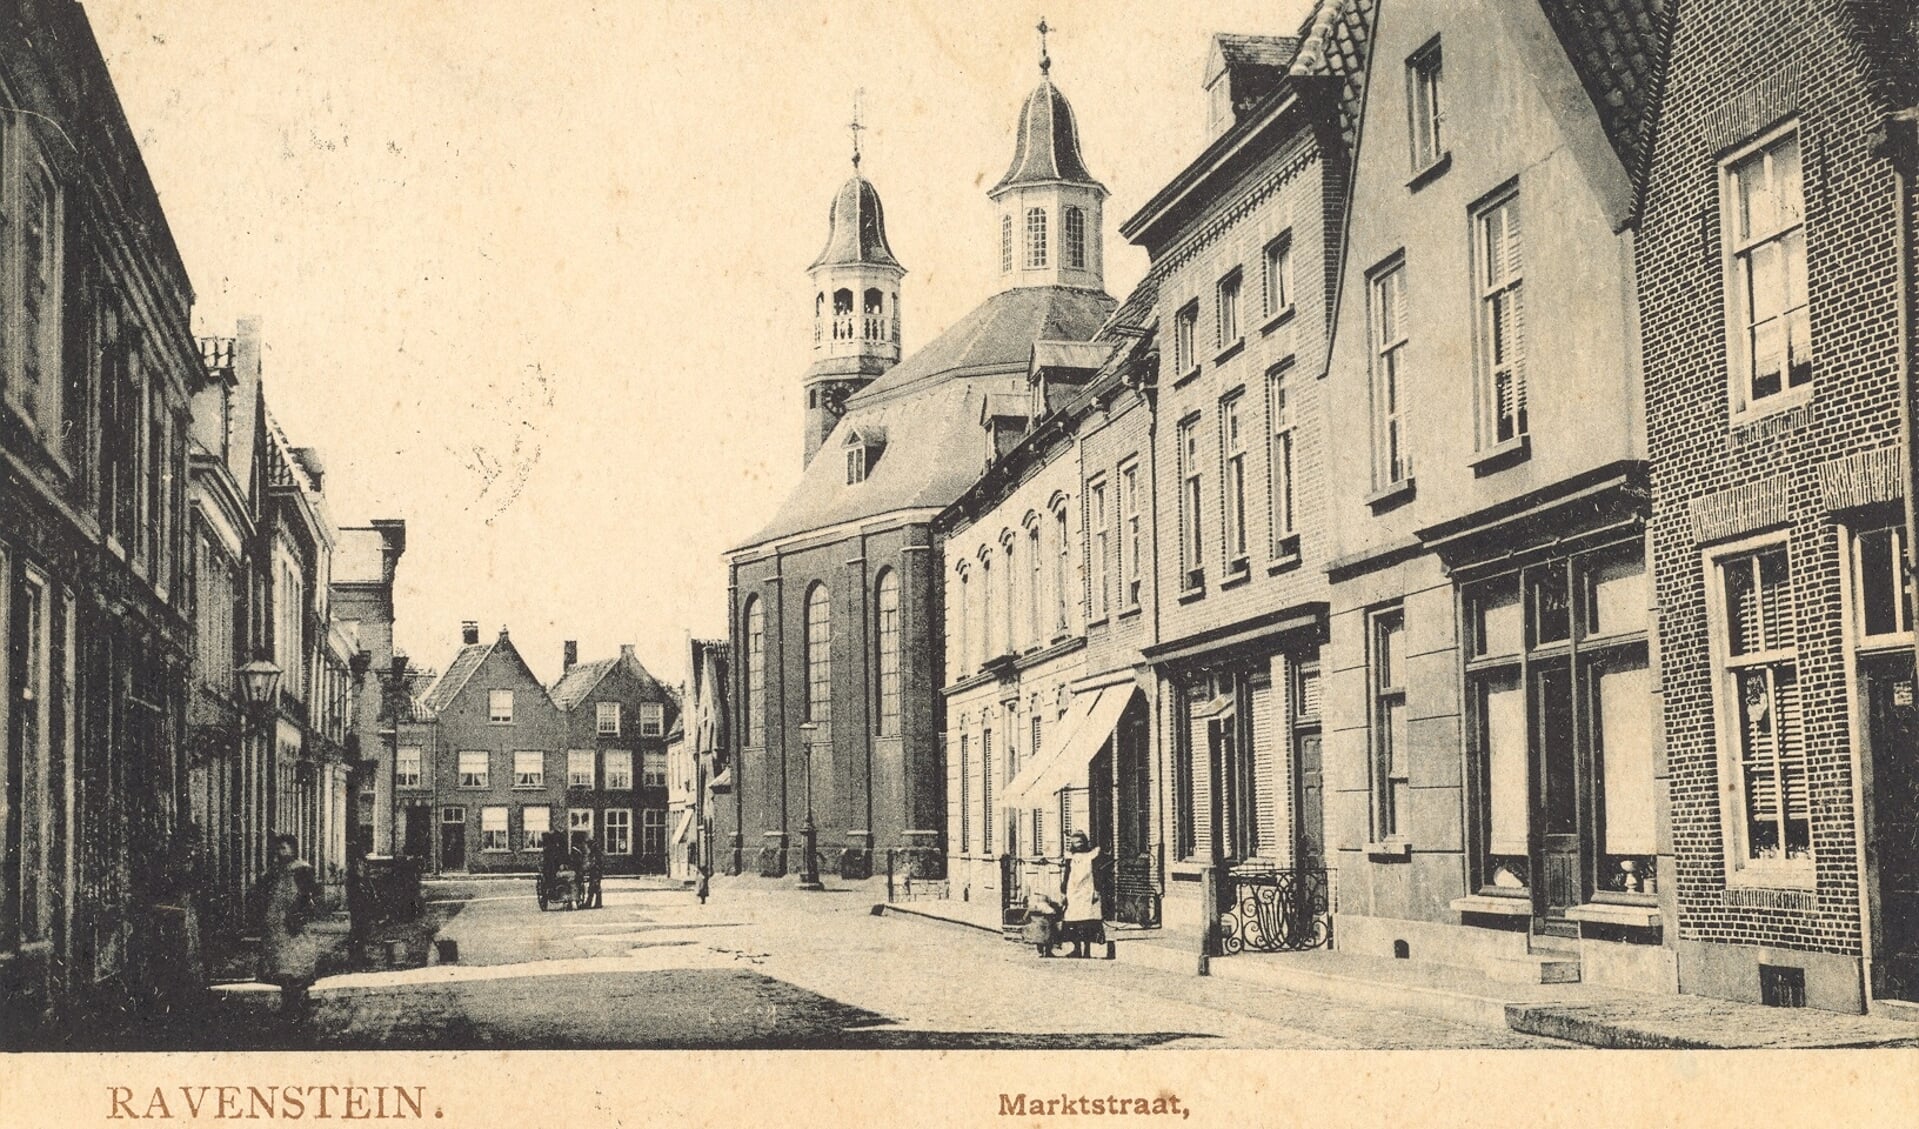 Een ansichtkaart van de Markstraat in Ravenstein, aan het begin van de vorige eeuw, met de Sint-Luciakerk prominent in beeld. (Collectie Stadsarchief Oss)